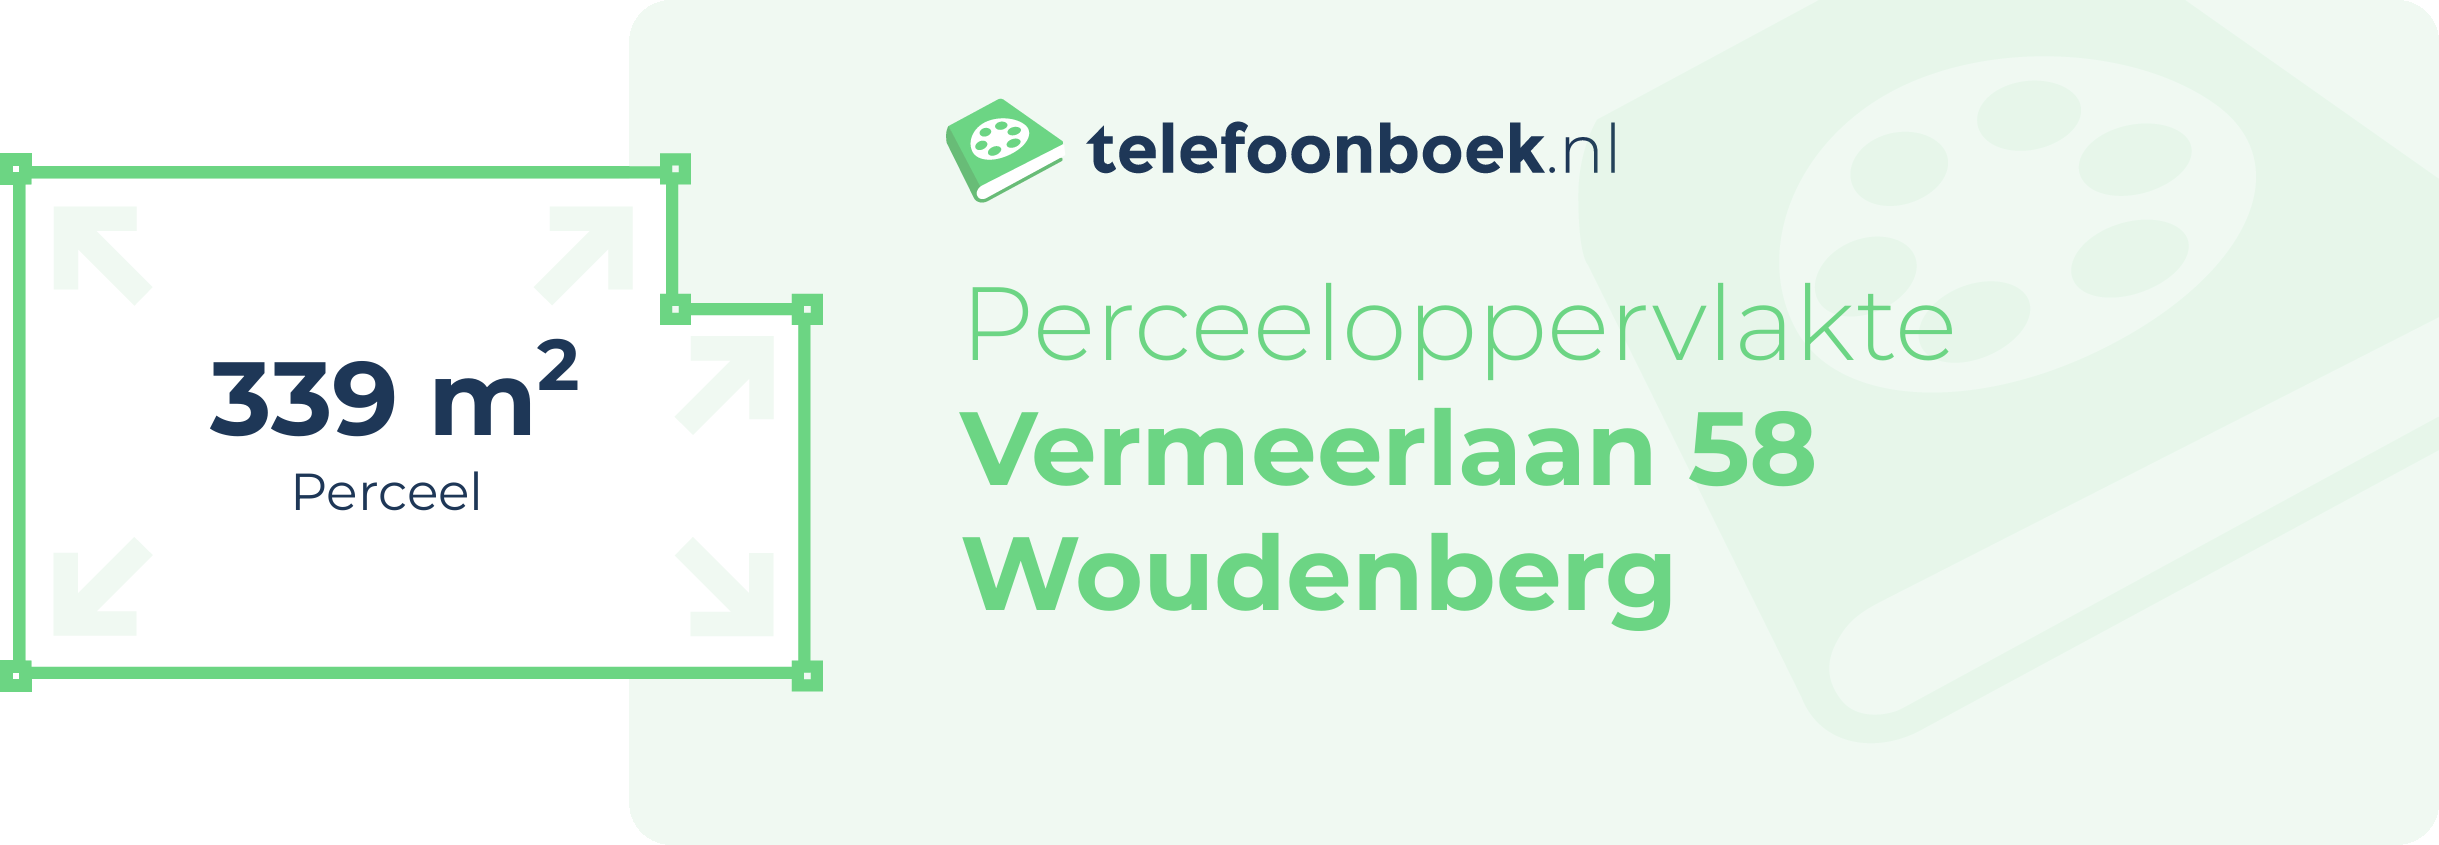 Perceeloppervlakte Vermeerlaan 58 Woudenberg